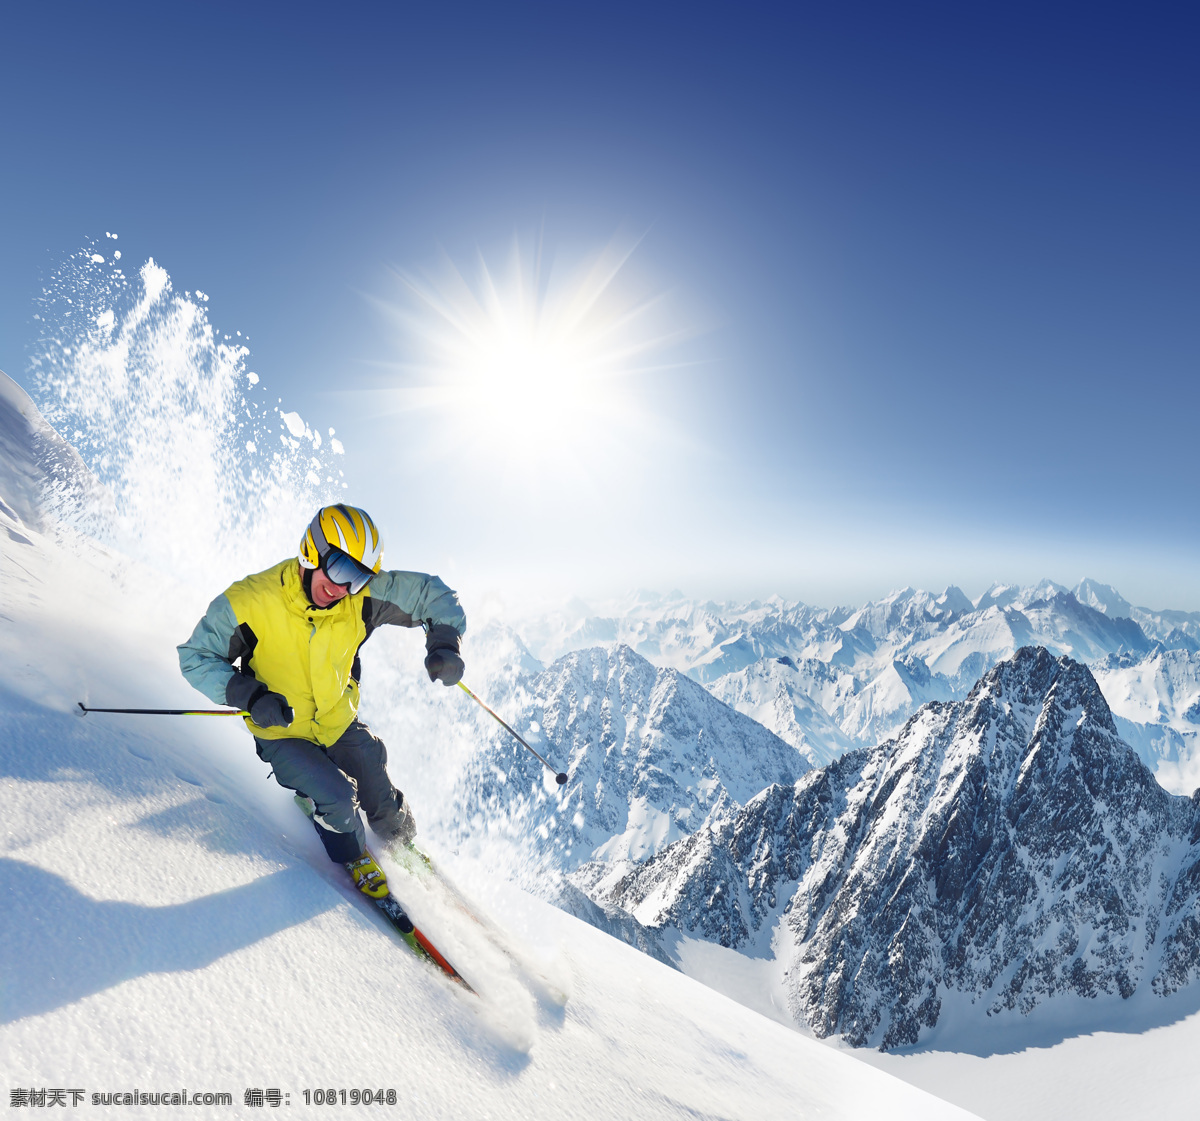 雪地 滑雪 男人 雪山 人物 人物摄影 人物素材 职业人物 生活人物 滑雪图片 生活百科